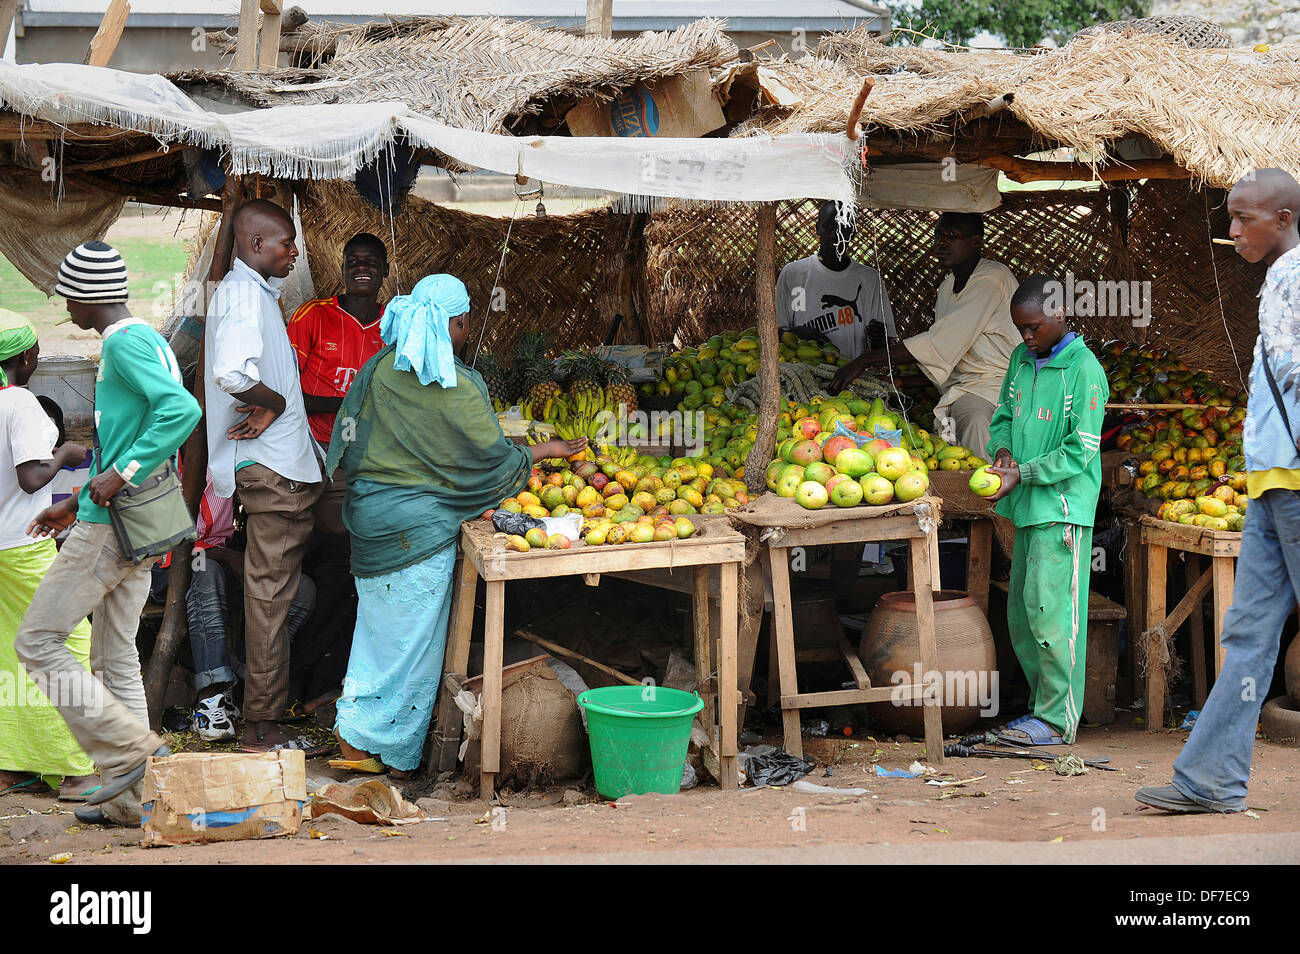 Stall mit Obst und Gemüse an einer Durchfahrtsstraße, Garoua, Region Nord-Kamerun Stockfoto